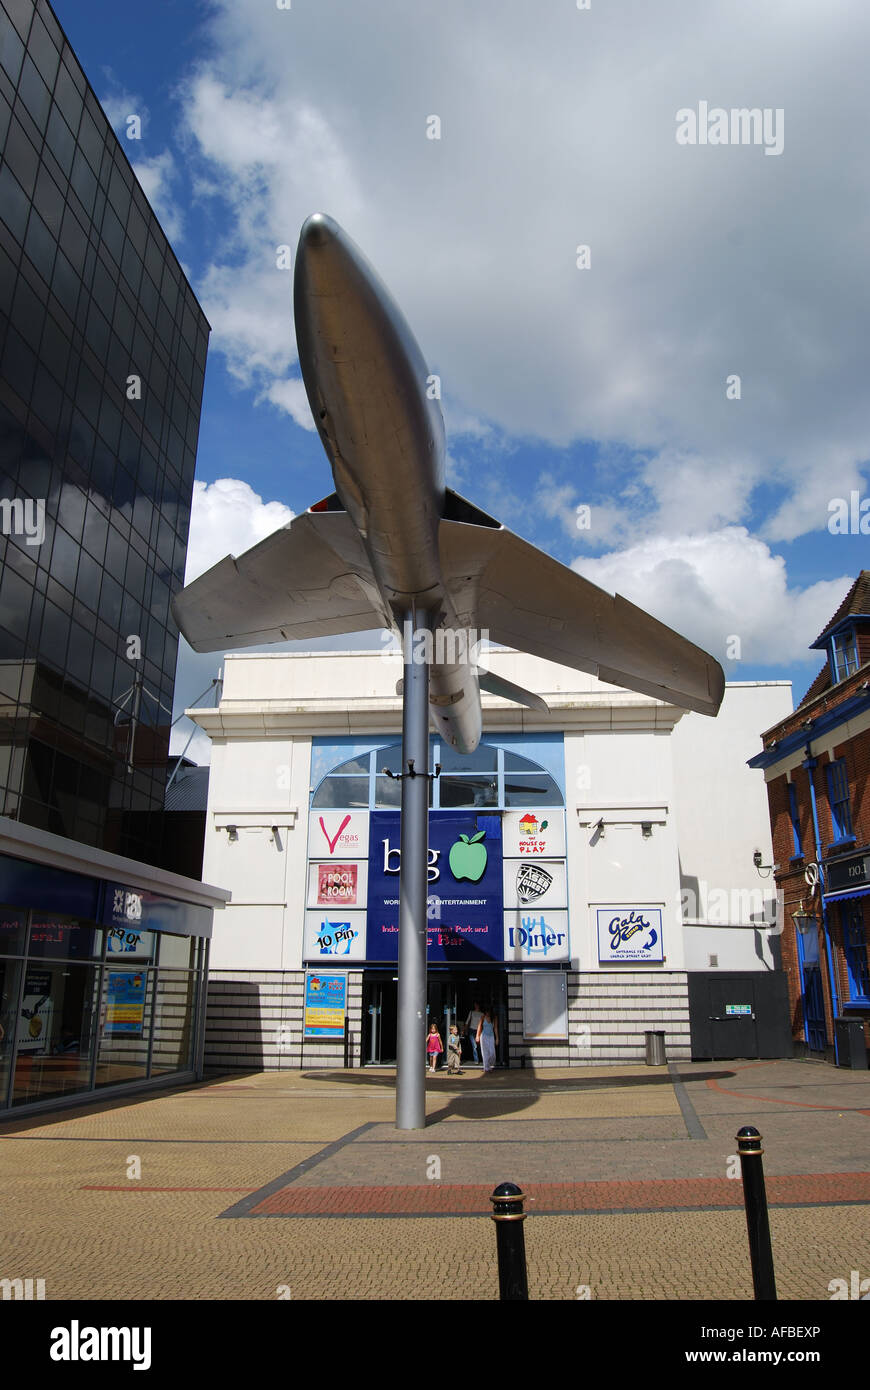 Hawker Hunter réplique avion, centre ville, Woking, Surrey, Angleterre, Royaume-Uni Banque D'Images